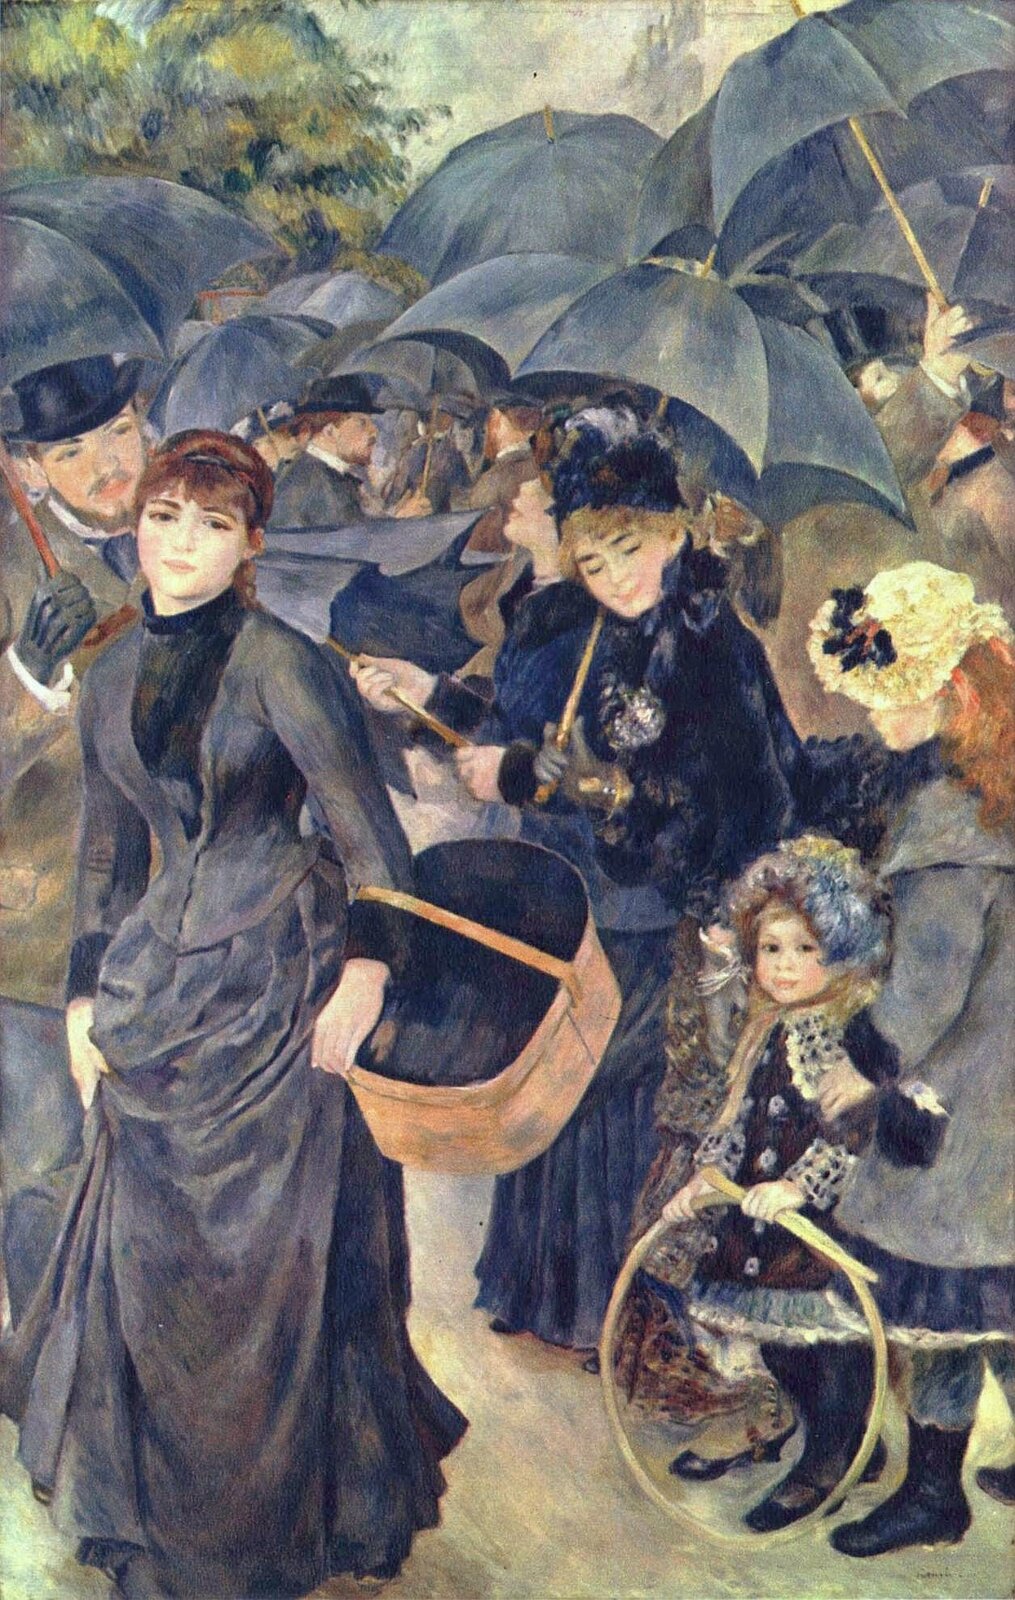 Ilustracja o kształcie pionowego prostokąta przedstawia obraz Auguste Renoira „Parasolki”. Obraz ten łączy z prawej strony sposób malowania impresjonistyczny (suknie, twarze, kapelusze, dziewczynka) z nowym, cierpkim stylem bądź inaczej zwanym ingresowskim widocznym wyraźnie w postaci kobiety z lewej strony obrazu. Kolory stają się bardziej subtelne, a kompozycja bardziej wyważona i przemyślana.